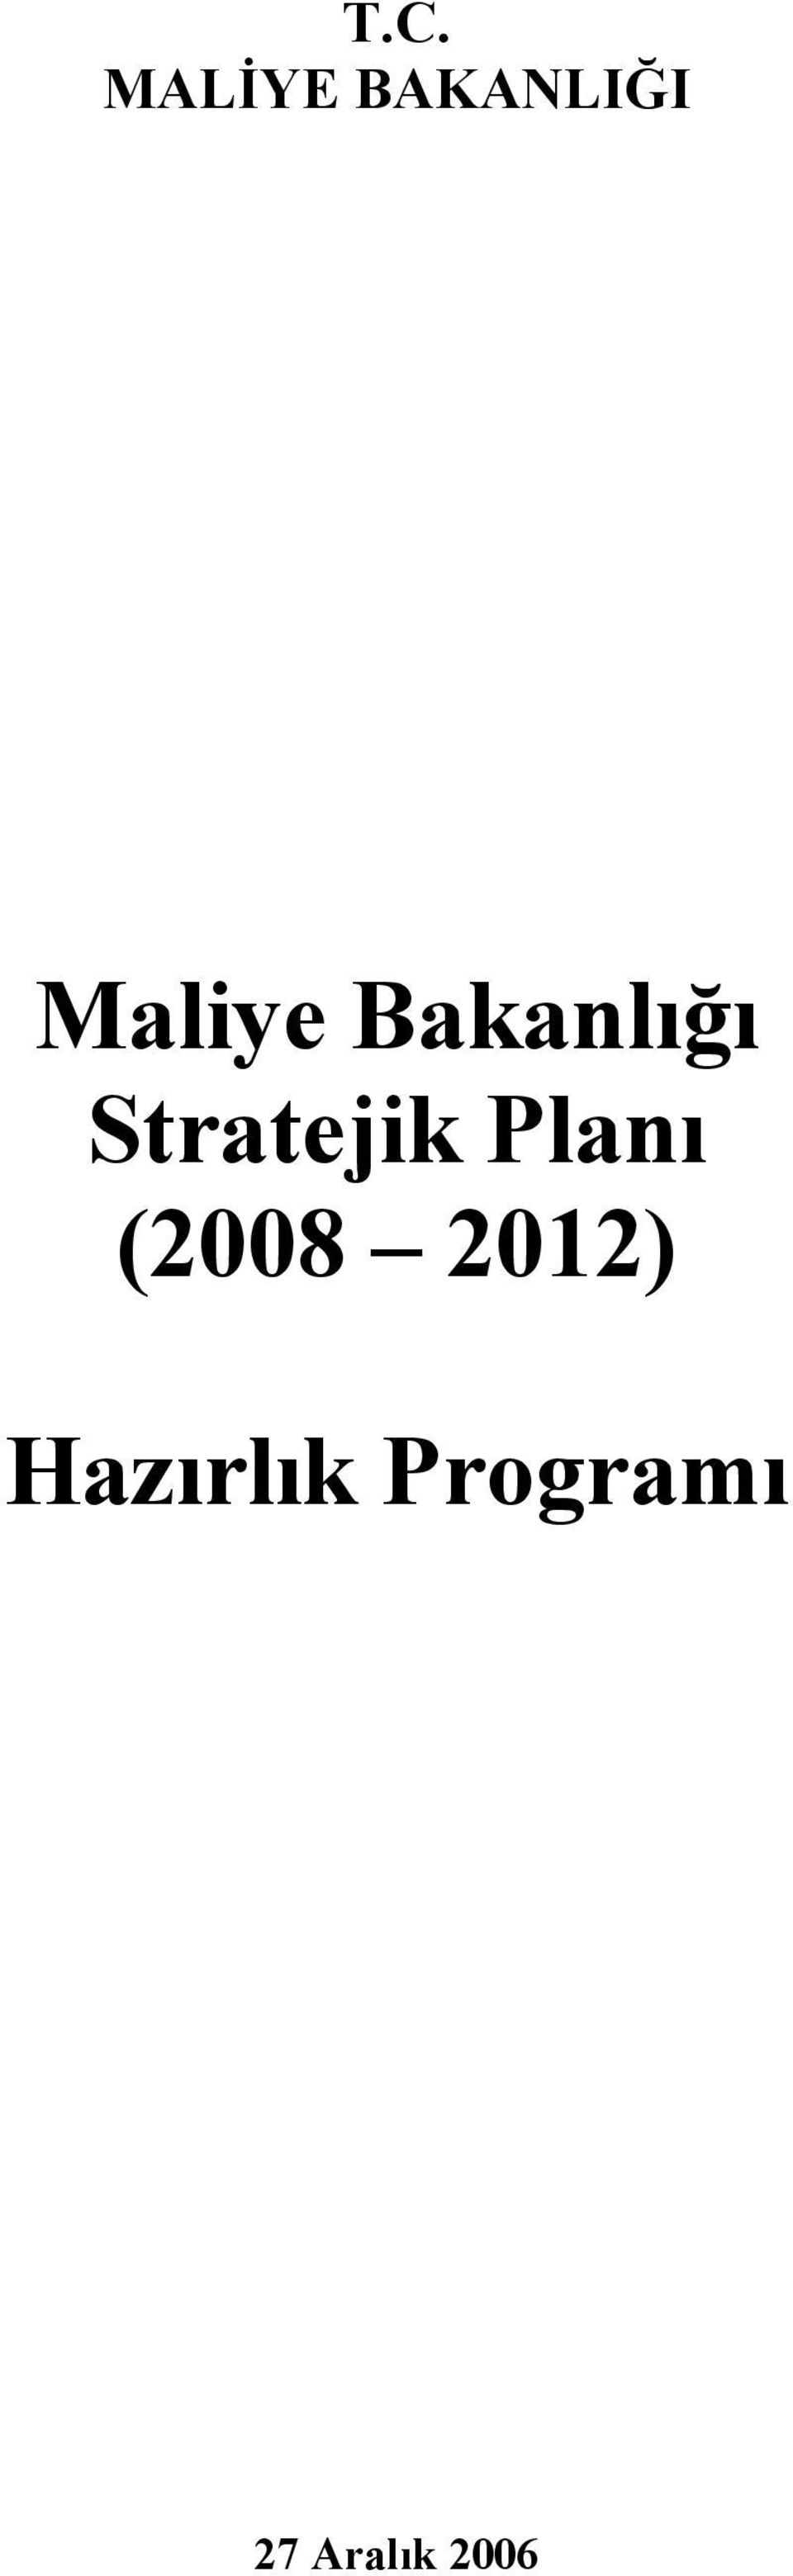 Stratejik Planı (2008